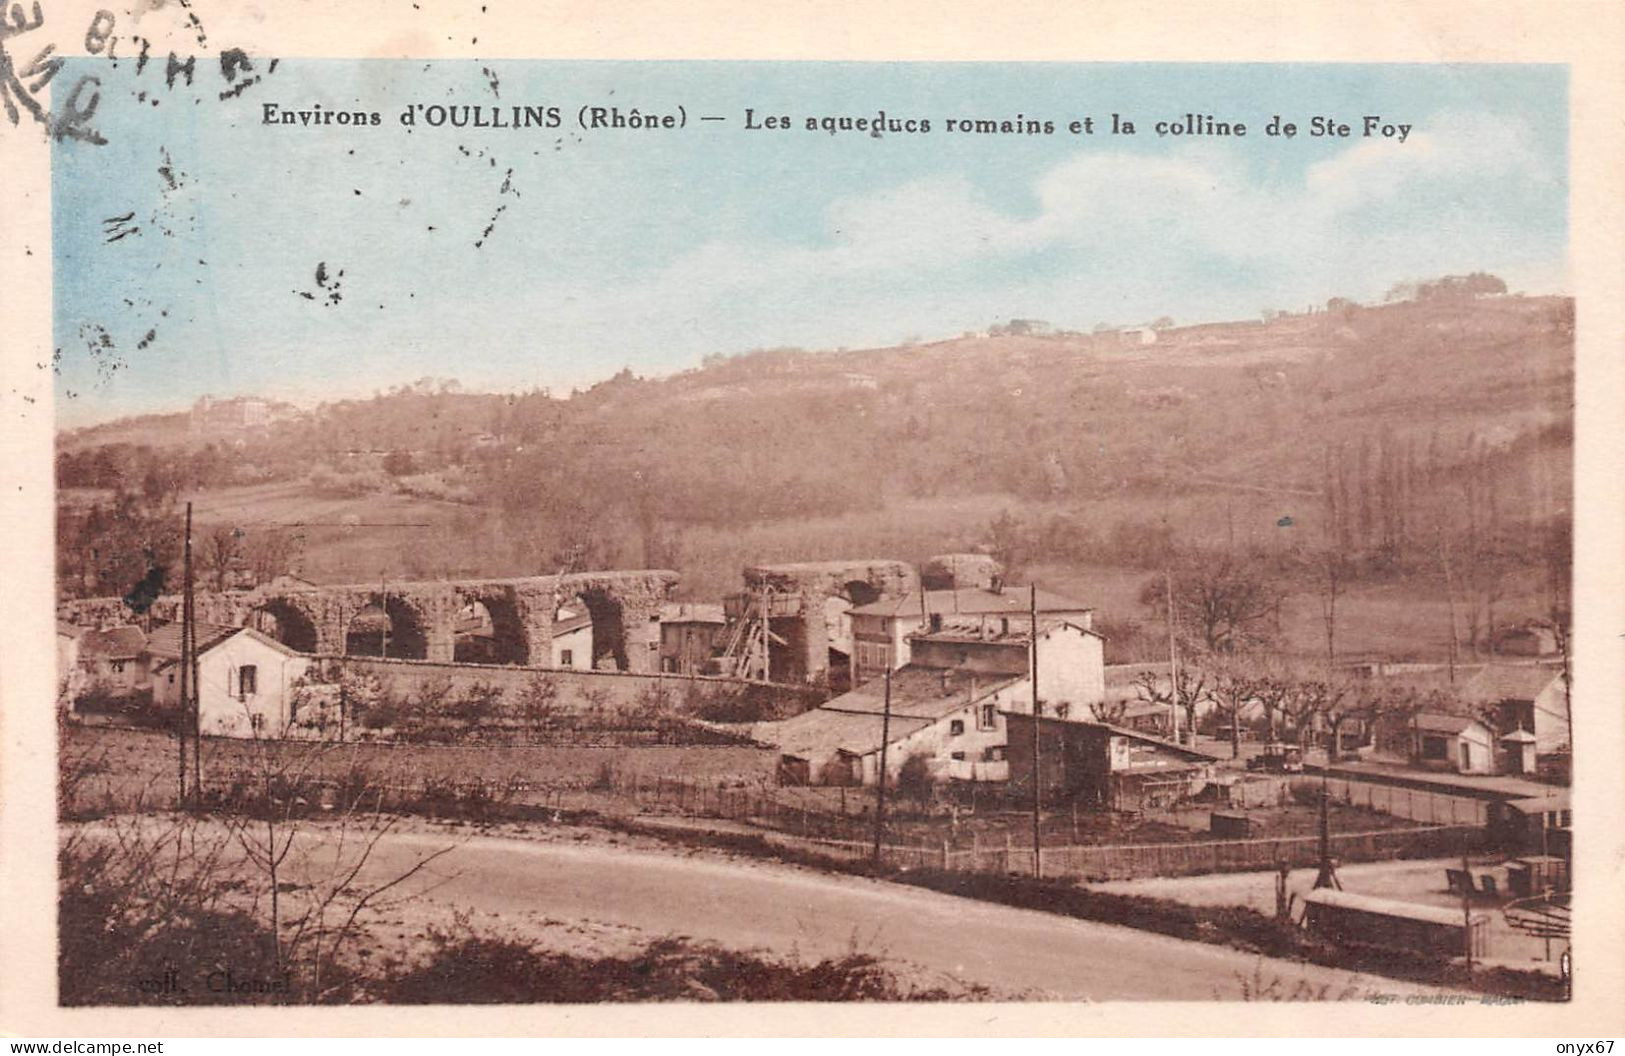 Environs D' OULLINS-69-Rhône-Aqueducs Romains Et Colline De Sainte-Foy-Photo Combier, Mâcon-CIM - Oullins